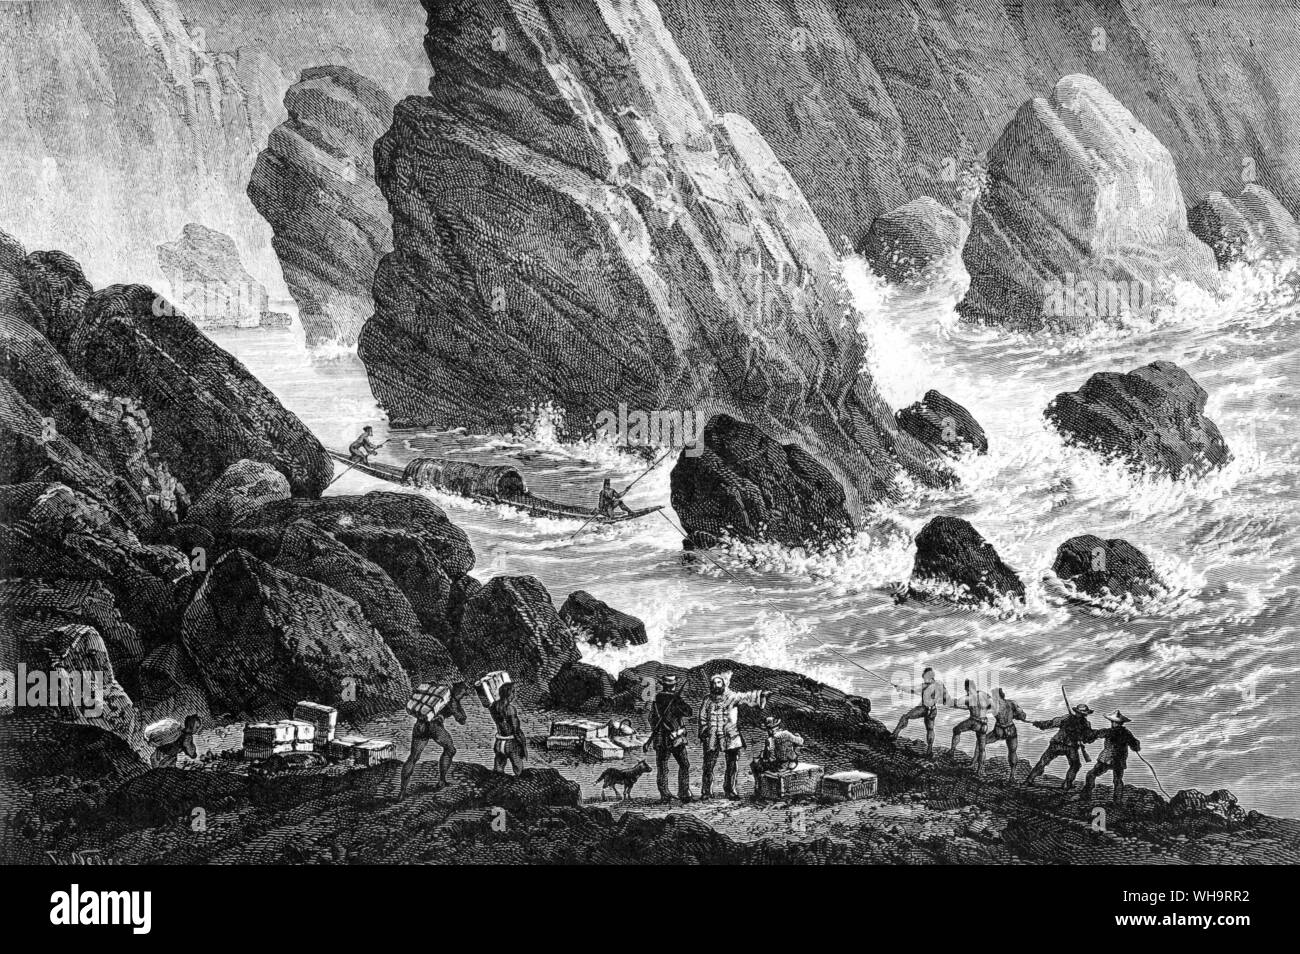 Passage von Keng Pansoa. Von: "Voyage d'Exploration in Indochina' von Francis Garnier, Paris, 1873. Stockfoto